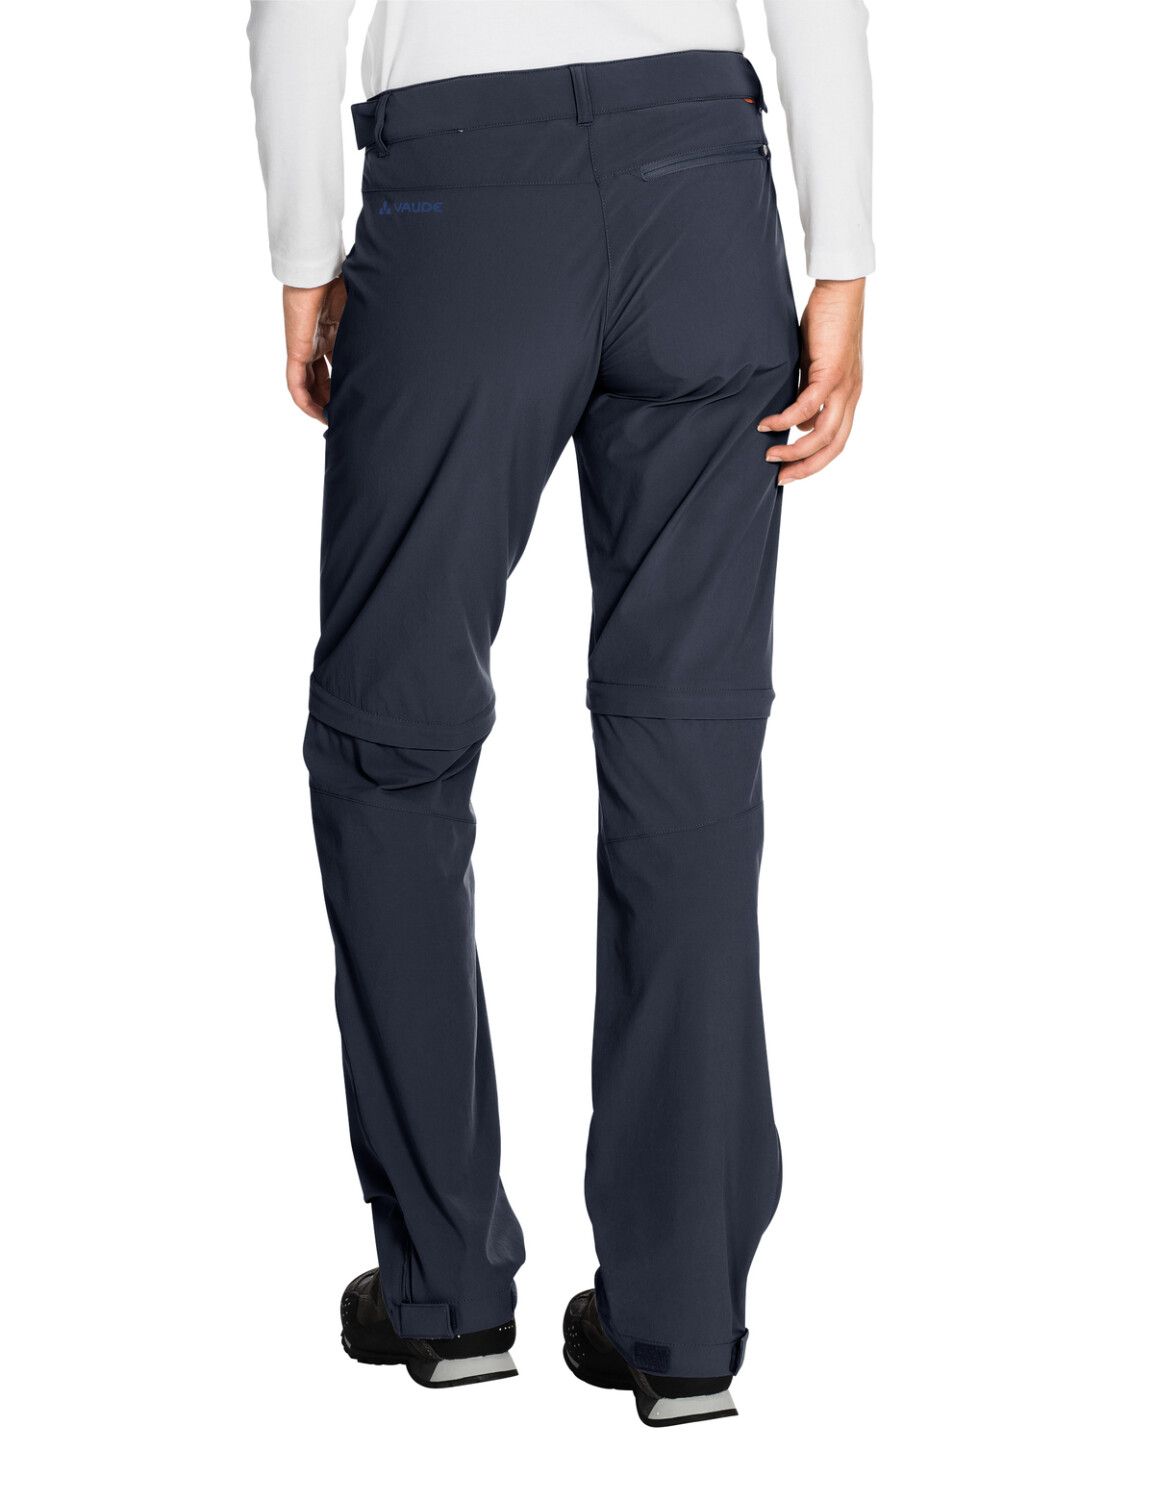 VAUDE Women's Farley Stretch ZO T-Zip Pants (Bild 53)